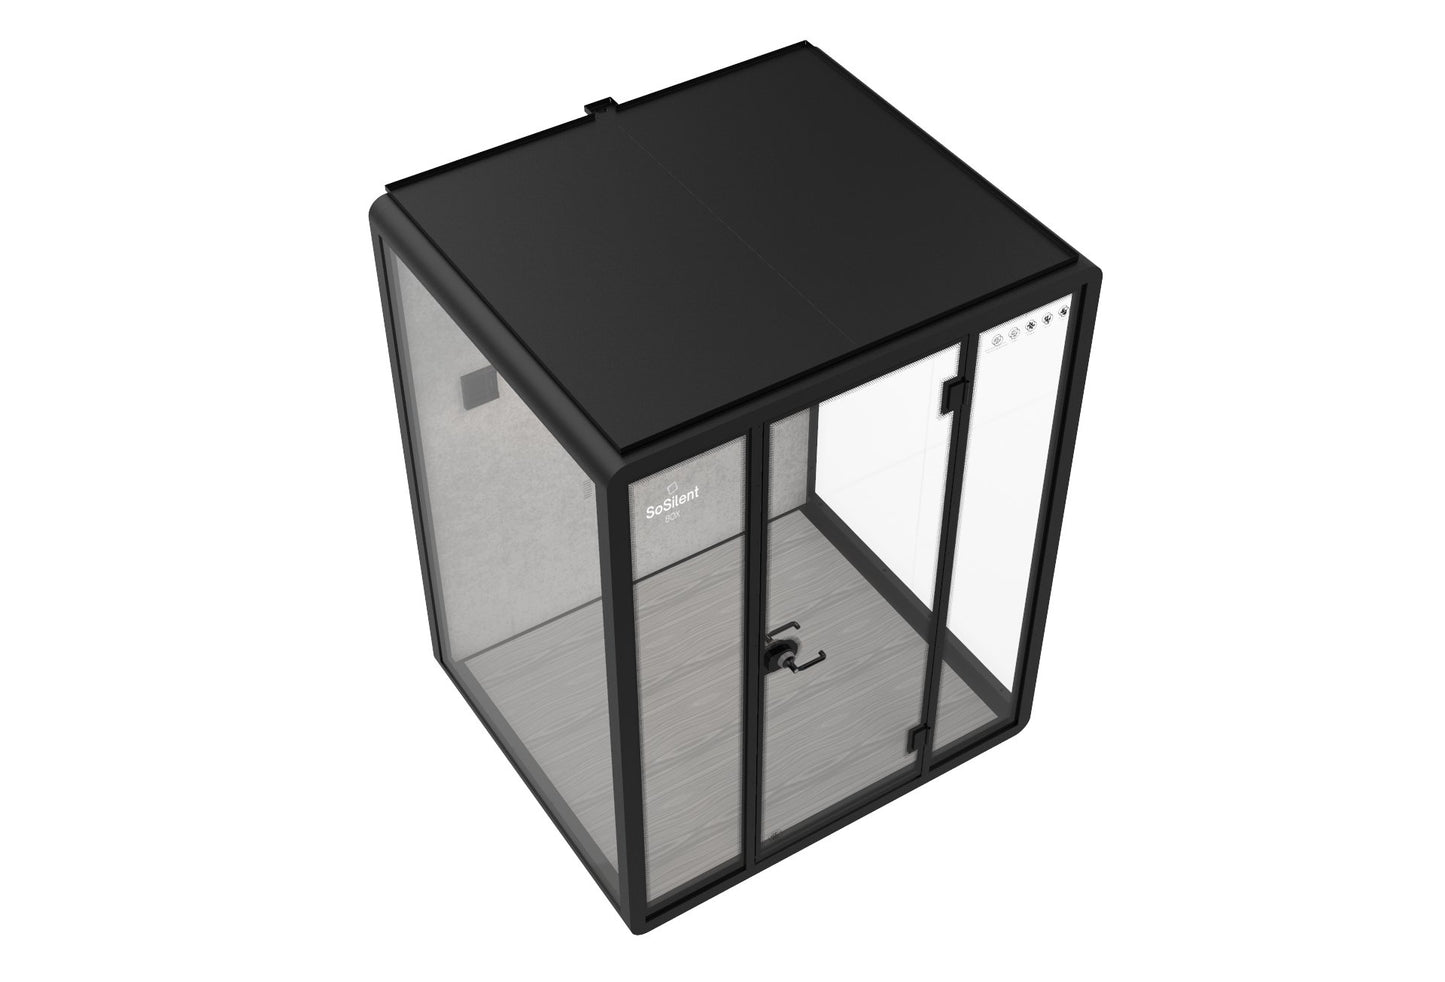 Outdoor Meetingbox OM3 - wetterfeste schallisolierte Kabine - SoSilent